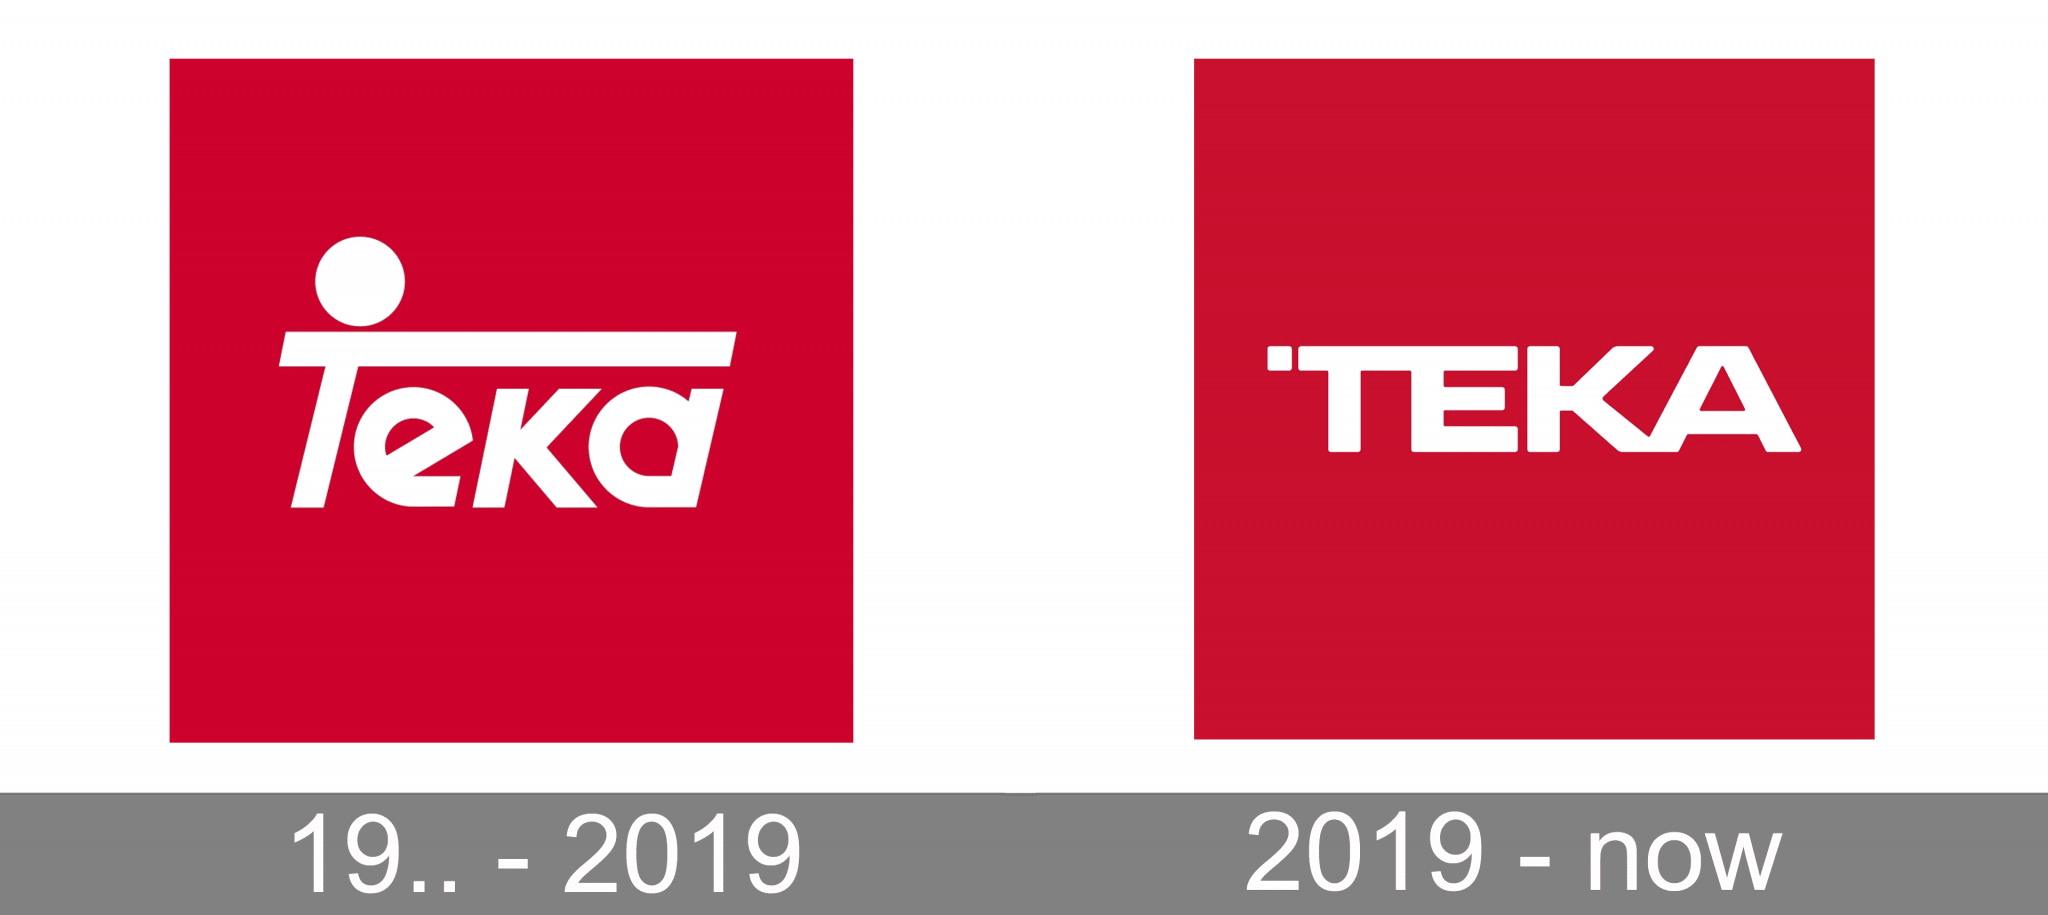 Teka Logo History 2048x915 